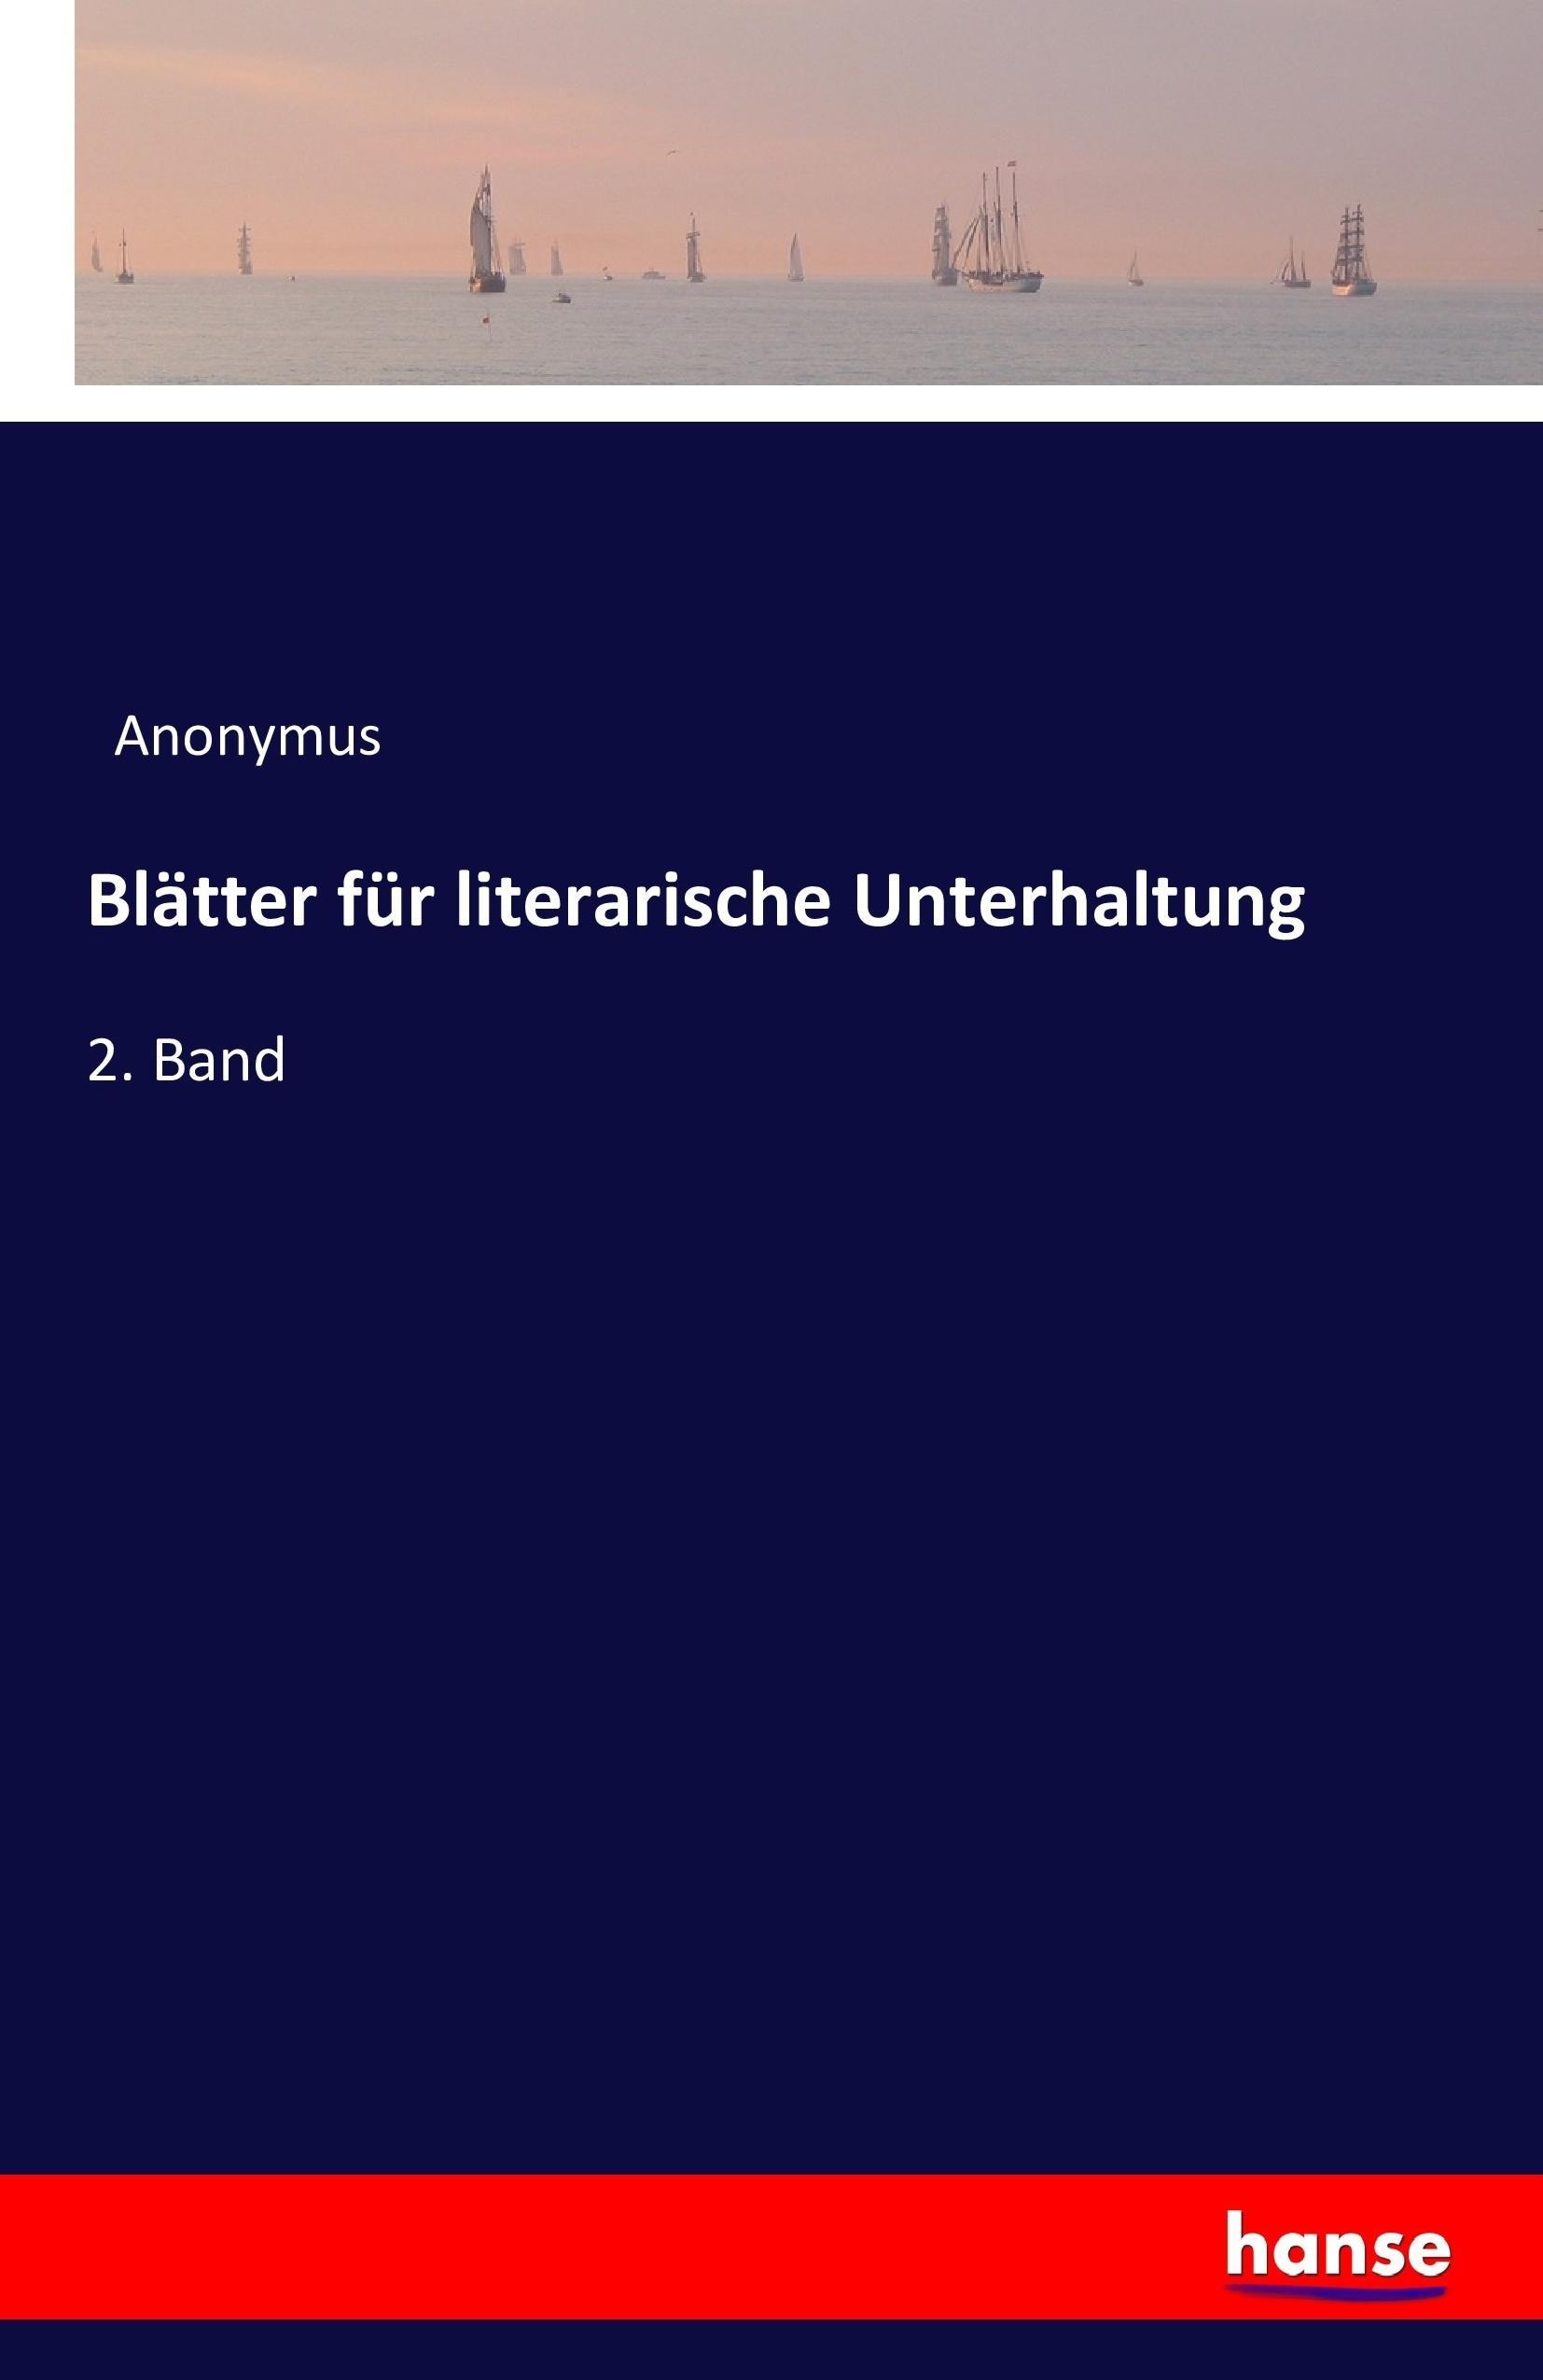 Blätter für literarische Unterhaltung | 2. Band | Anonymus | Taschenbuch | Paperback | 432 S. | Deutsch | 2016 | hansebooks | EAN 9783742819000 - Anonymus